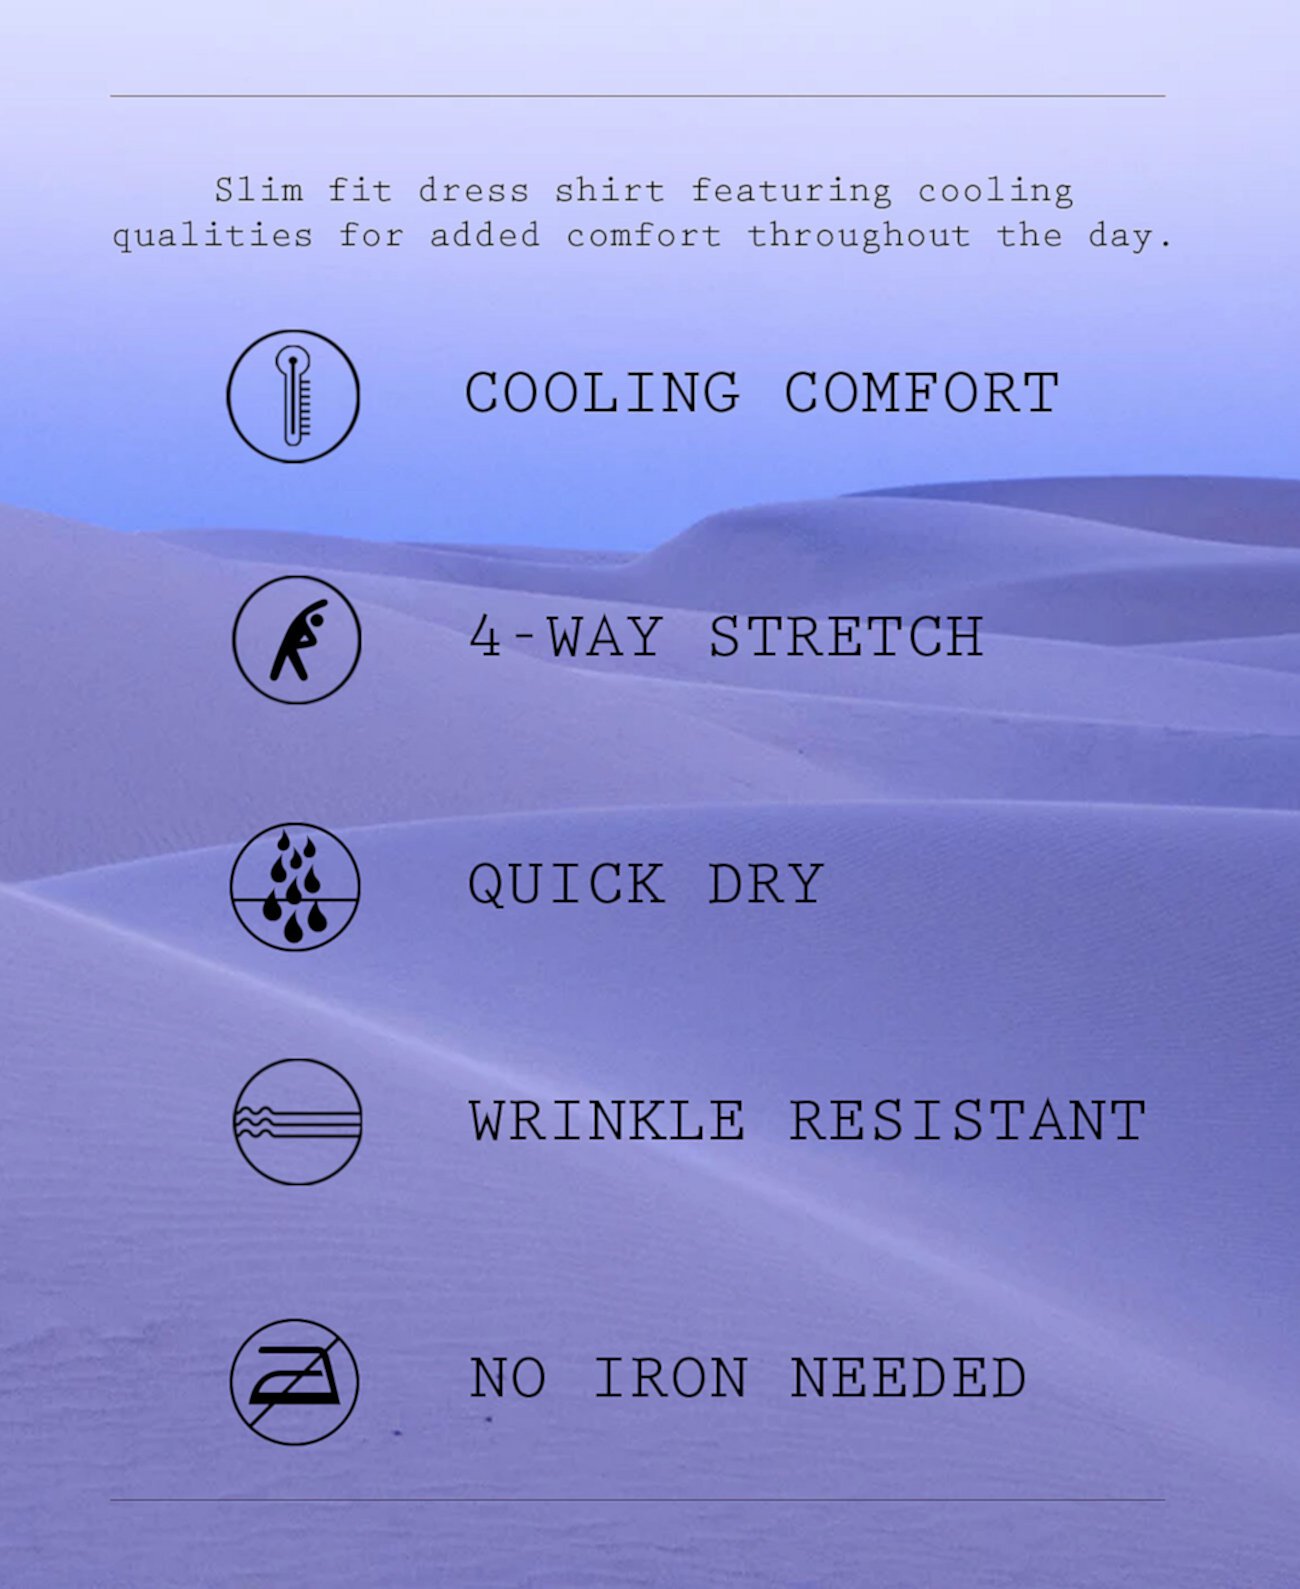 Мужская приталенная классическая рубашка Con.Struct Cooling Comfort Performance с эластичным точечным принтом и плиссированной маской для лица, созданная для Macy's CONSTRUCT